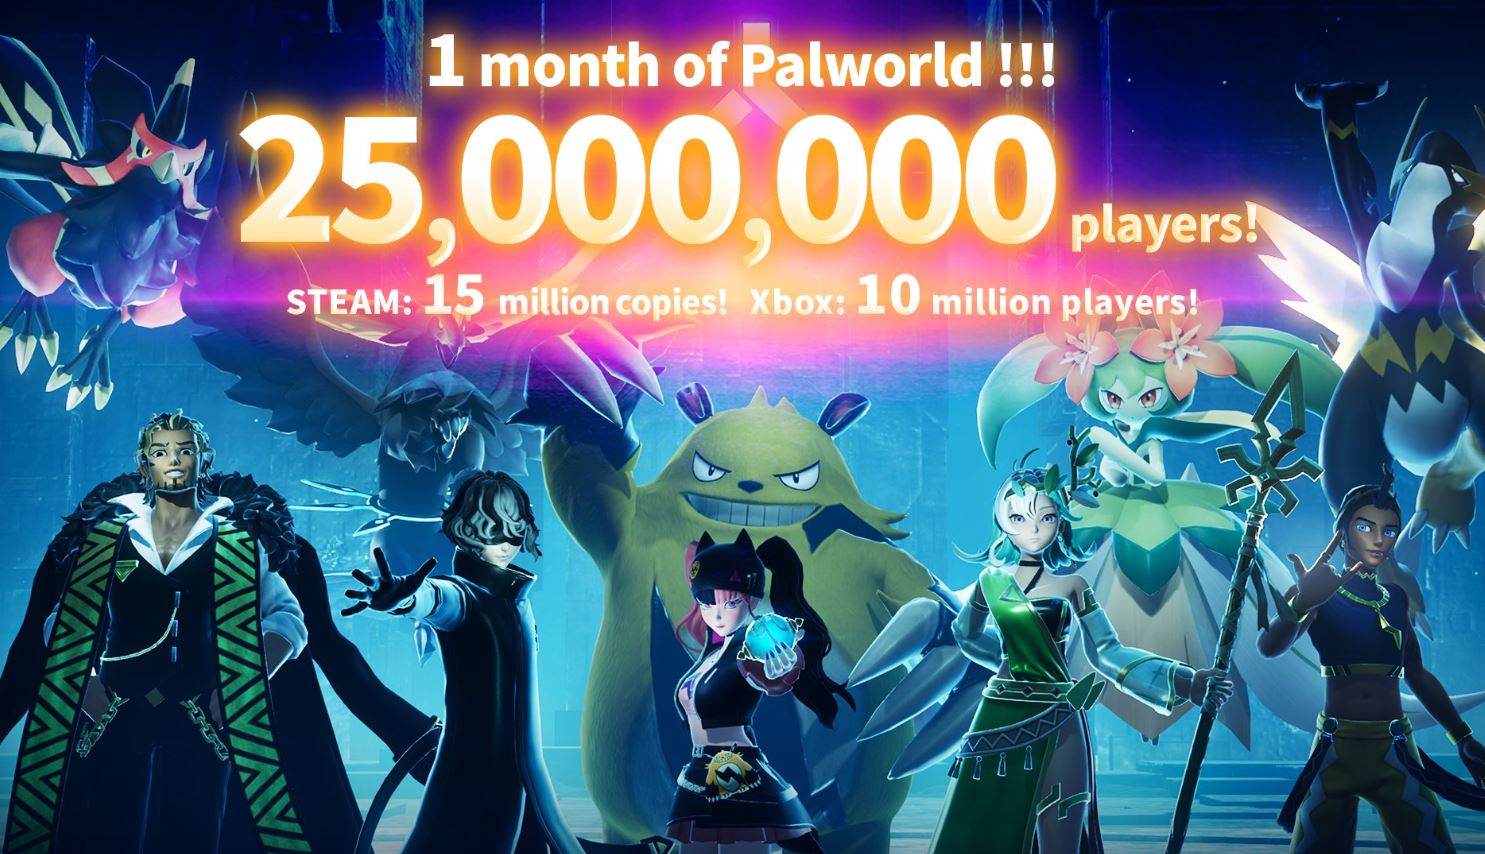 Palworld llega a los 25 millones de jugadores